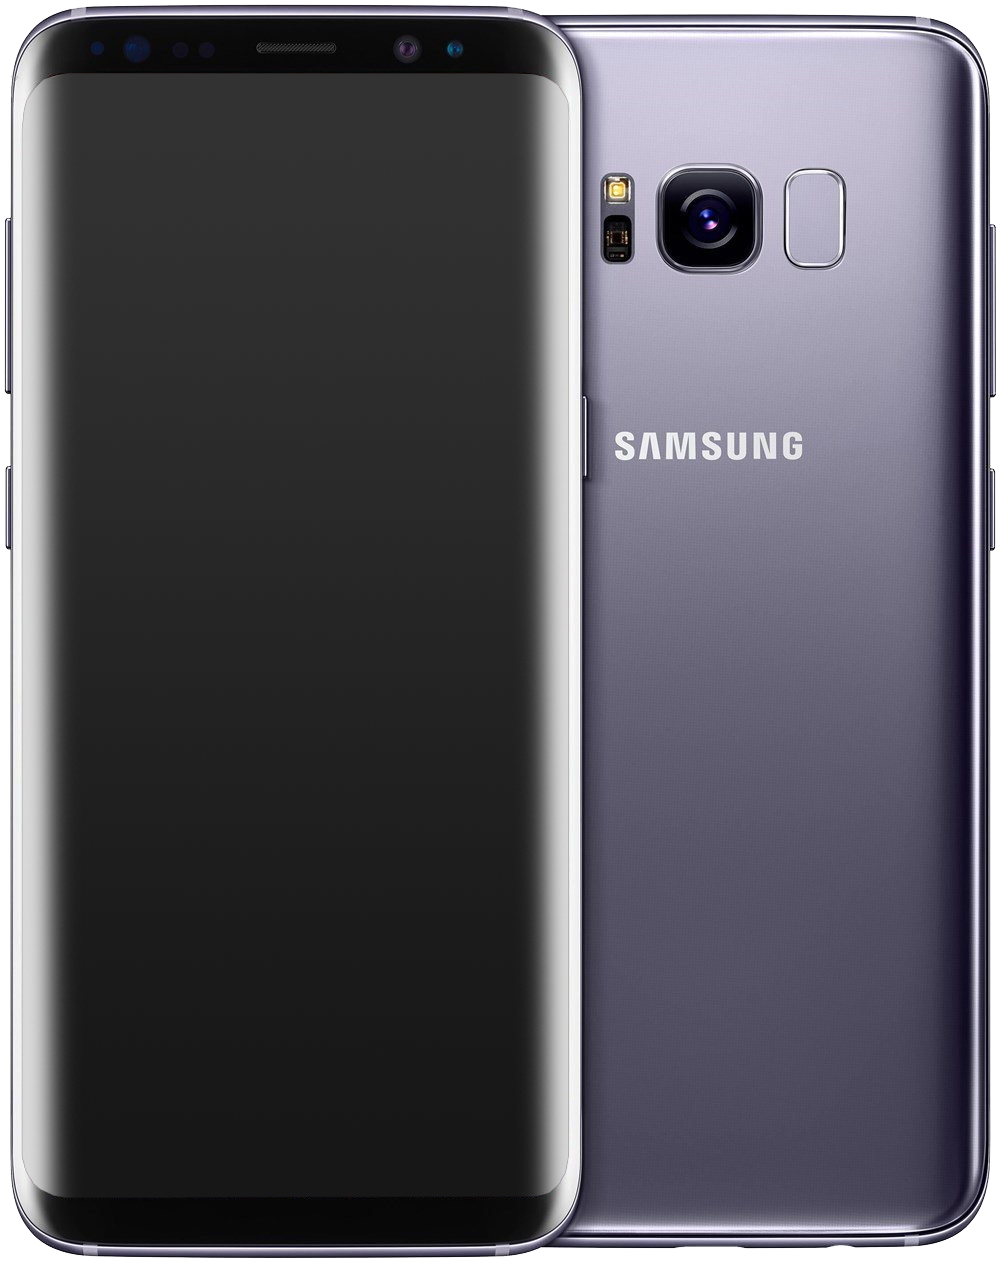 Samsung Galaxy S8 Dual-SIM grau - Ohne Vertrag